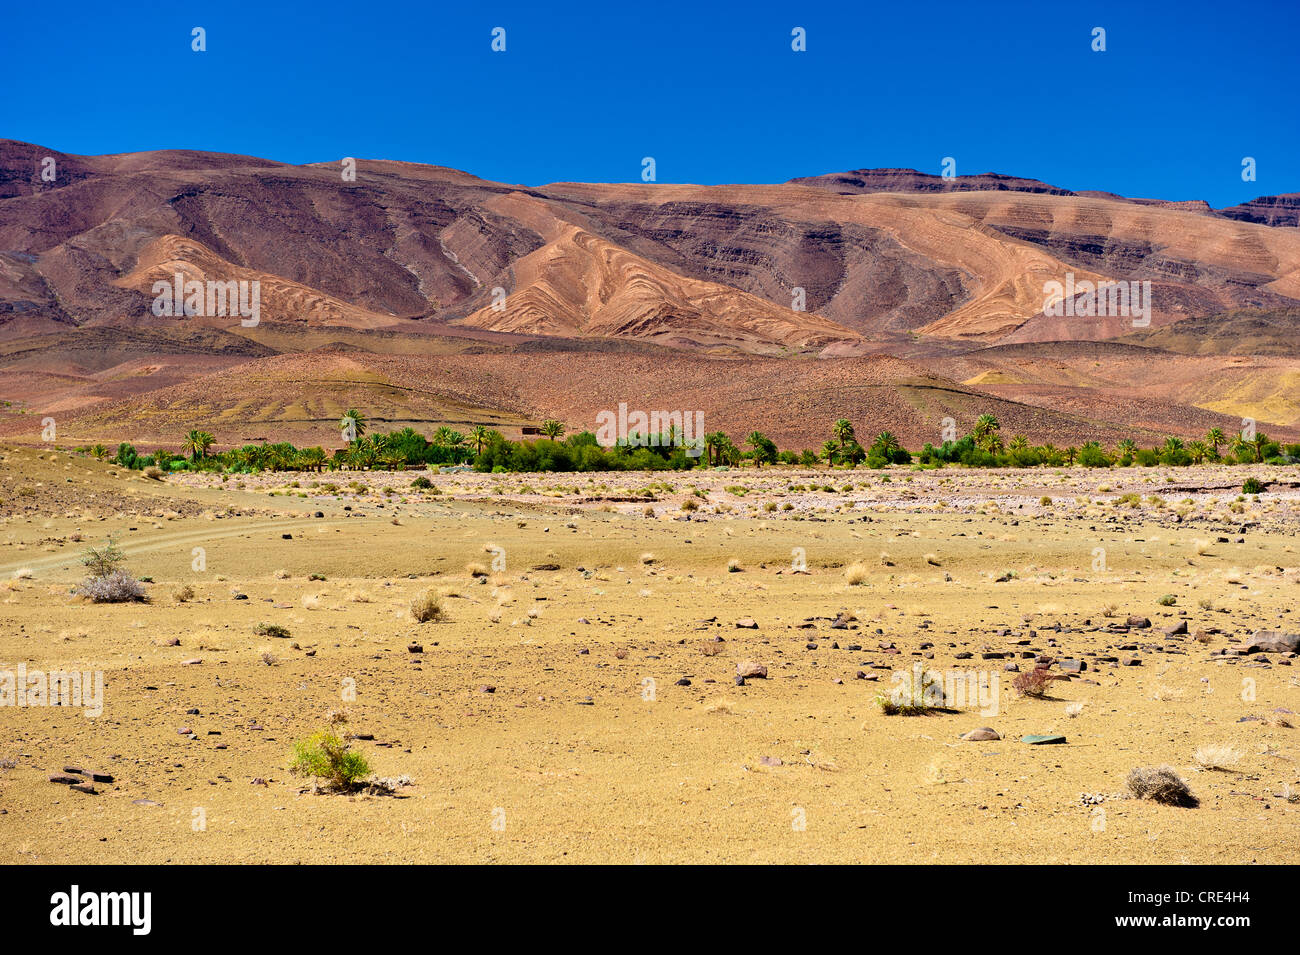 Secco, deserto-come il paesaggio con alberi radi la crescita e l'erosione dei versanti collinari, Agdz, sud del Marocco, Marocco, Africa Foto Stock